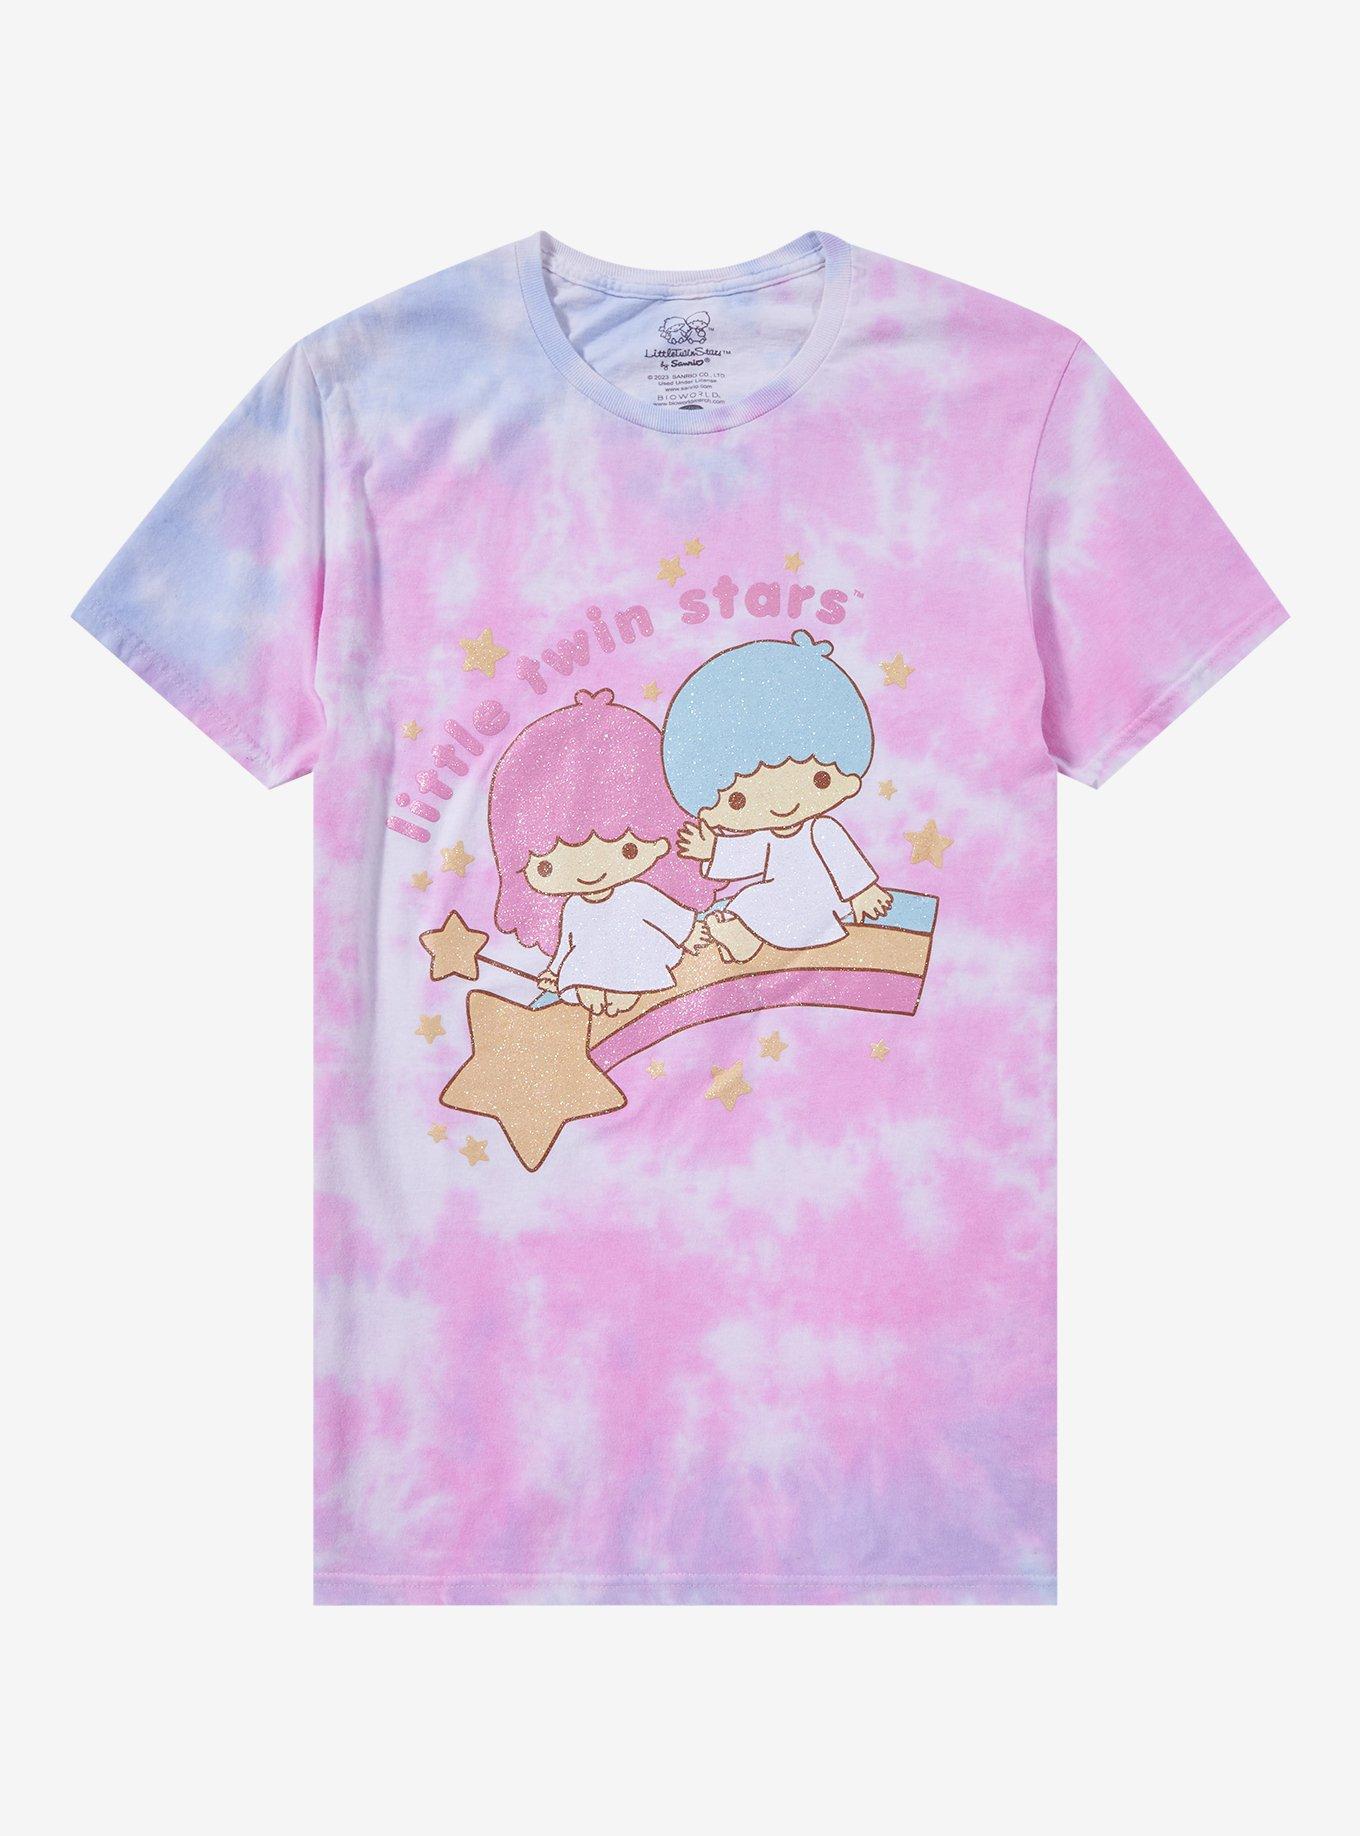 Little Twin Stars Glitter Tie-Dye Boyfriend Fit Girls T-Shirt